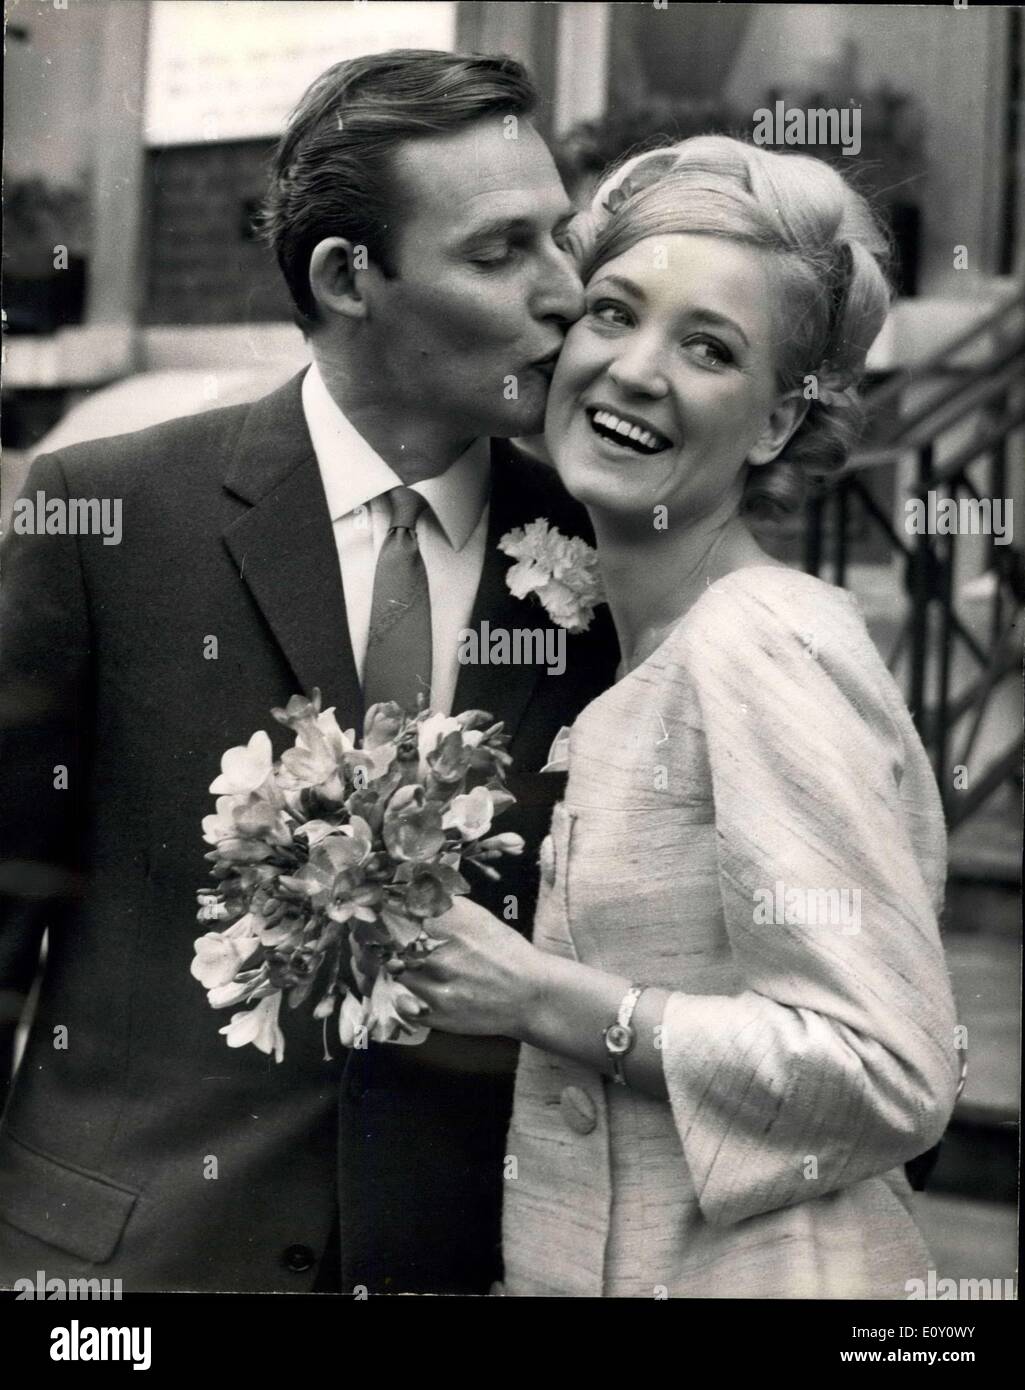 24 février 1968 - danseuse de la comédie musicale ''Charlie Girl'' Marries chanteuse d'opéra : Anthea Slattern, 26 ans une danseuse avec la comédie musicale ''Charlie Girl'' nouvelle dans sa troisième année au Théâtre Adolphi, a été mariée aujourd'hui le chanteur d'opéra de 38 ans, John Hauxvell, un néo-zélandais, et un membre de la Compagnie nationale d'opéra Welshi. Le mariage a eu lieu au Register Officer de Hampstead. Photo SHhows UN baiser pour la mariée de son marié après leur mariage aujourd'hui. Banque D'Images